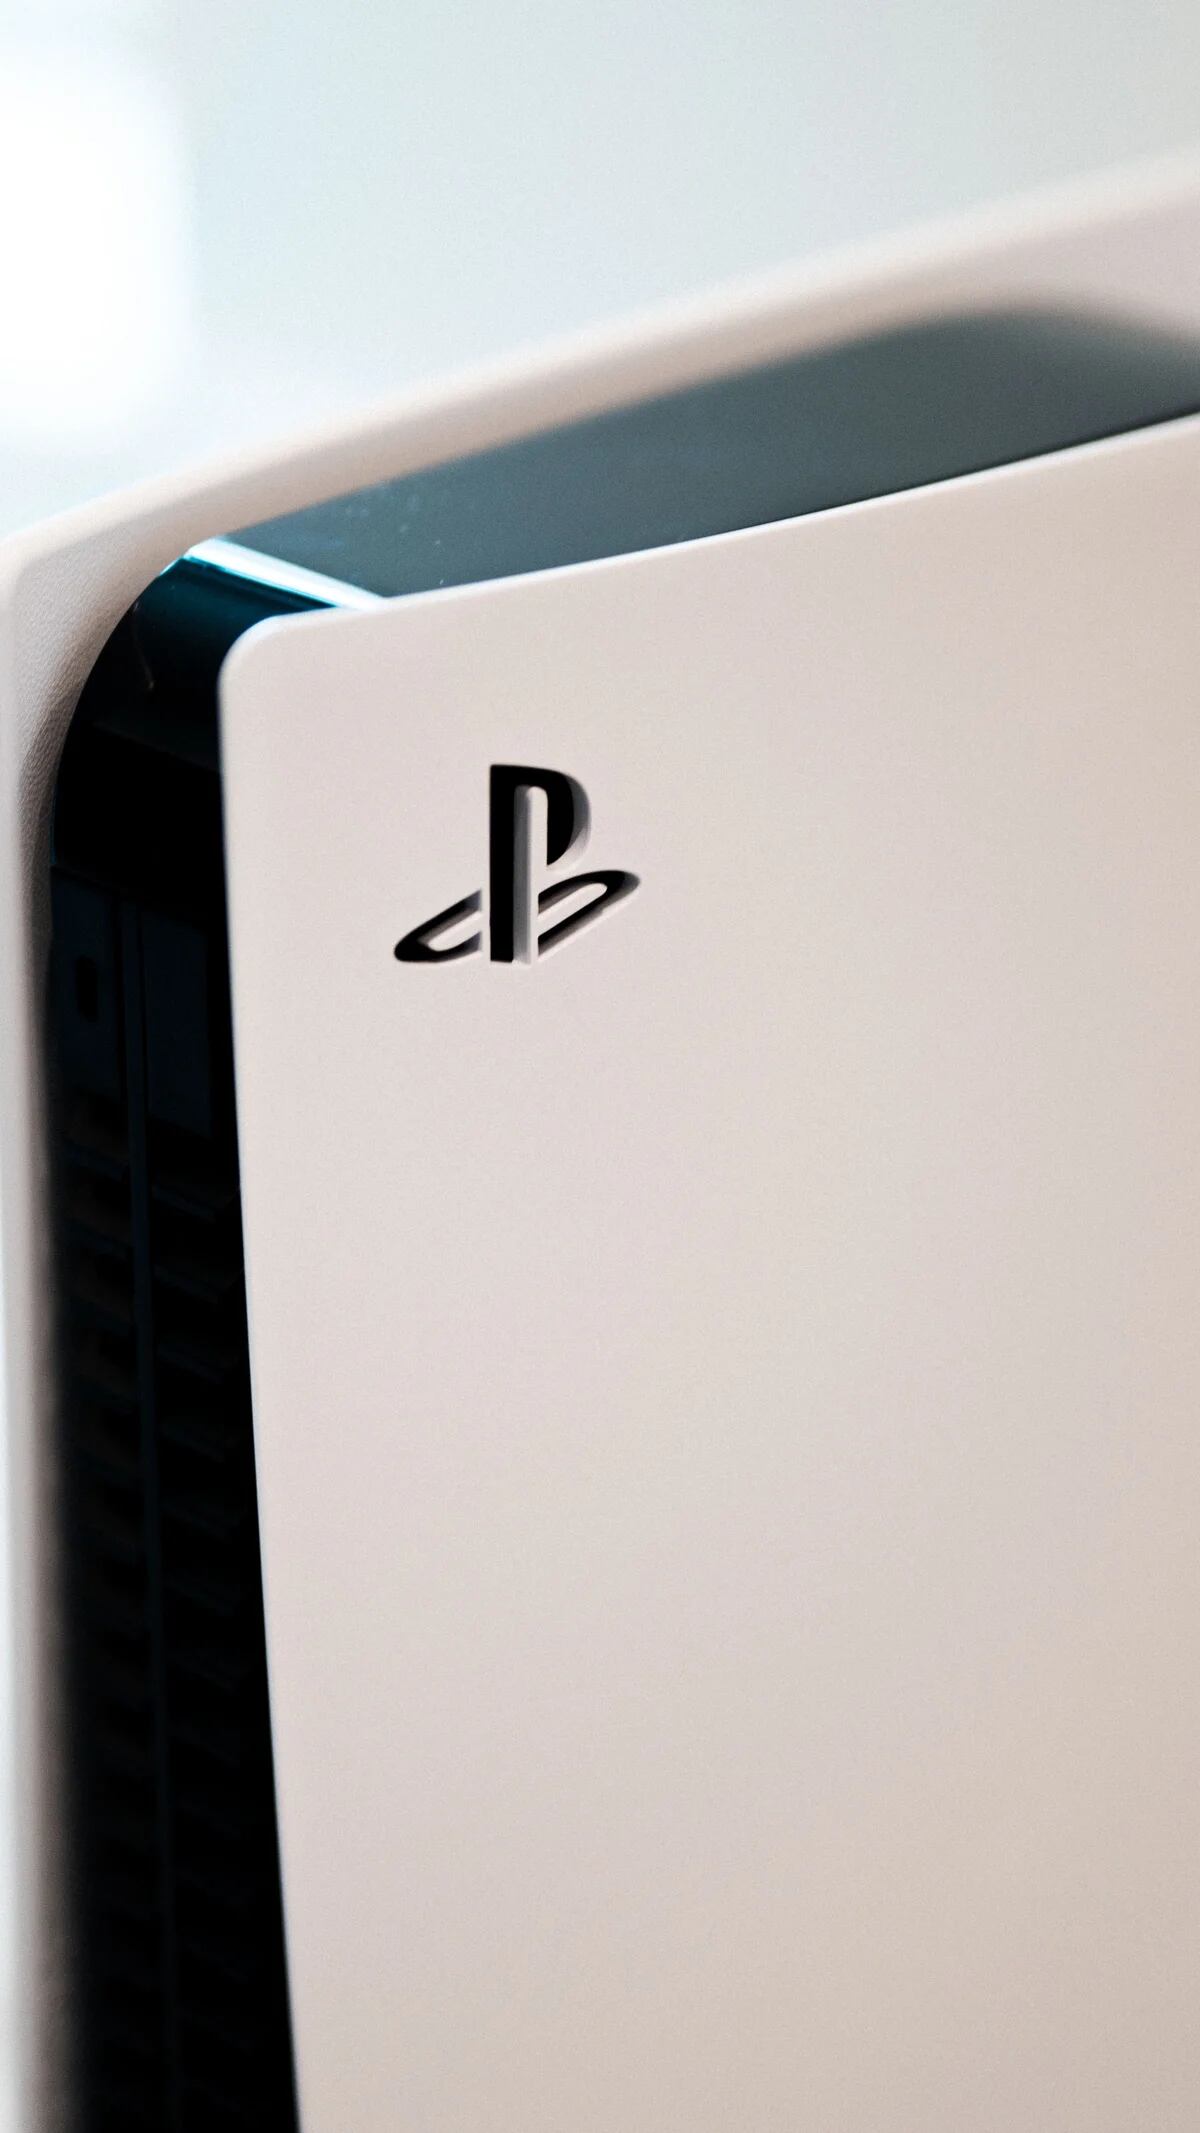 Los rumores apuntan a una futura PS5 más delgada con lector de discos  externo. La pregunta es para qué